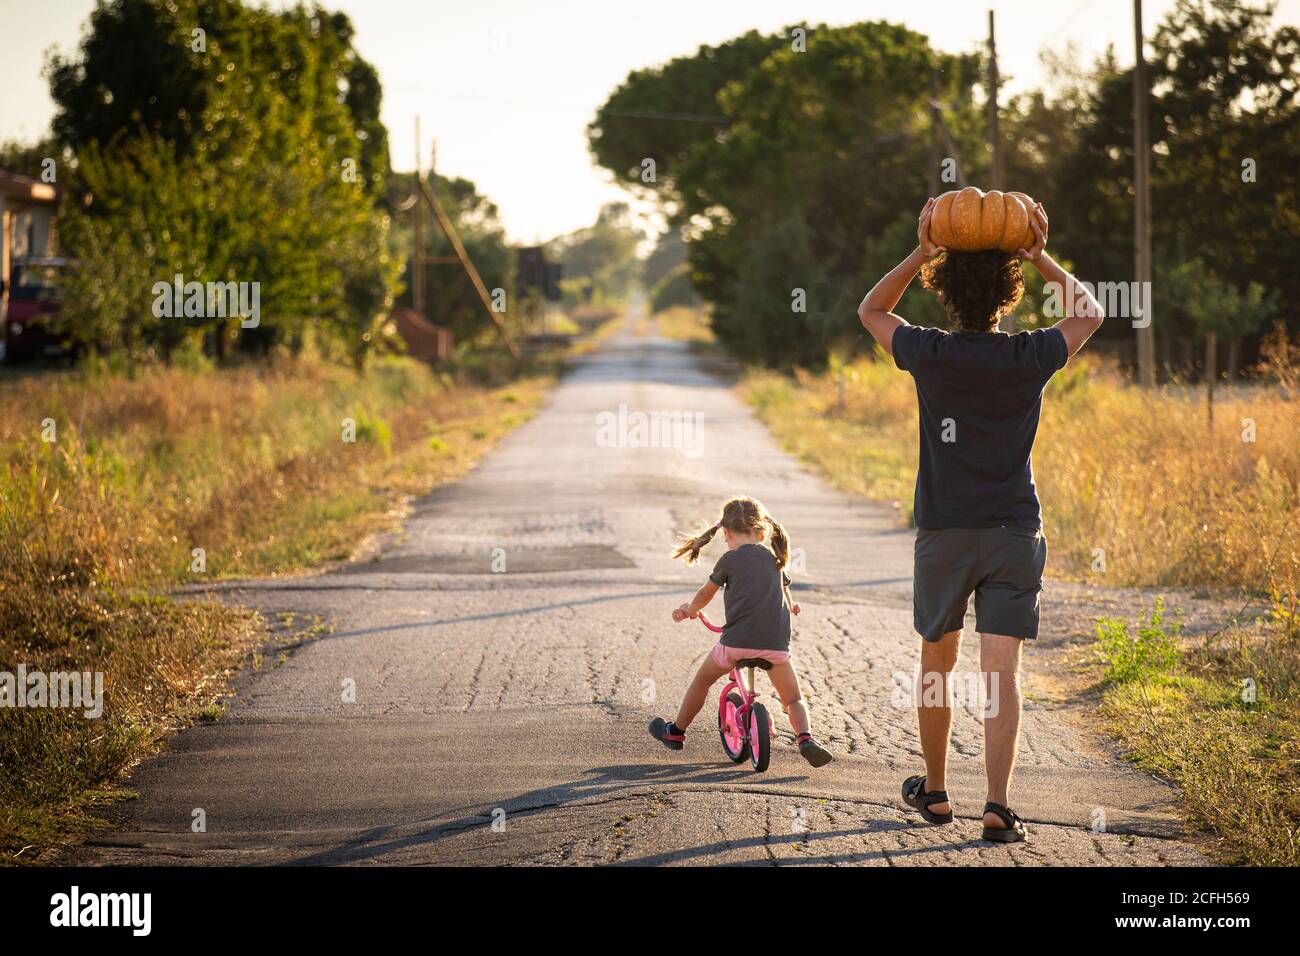 Kleines Mädchen, Fahrrad fahren, mit ihrem jungen Vater trägt einen großen halloween-Kürbis über den Kopf, auf einer Landstraße bei Sonnenuntergang. Rückansicht. Stockfoto